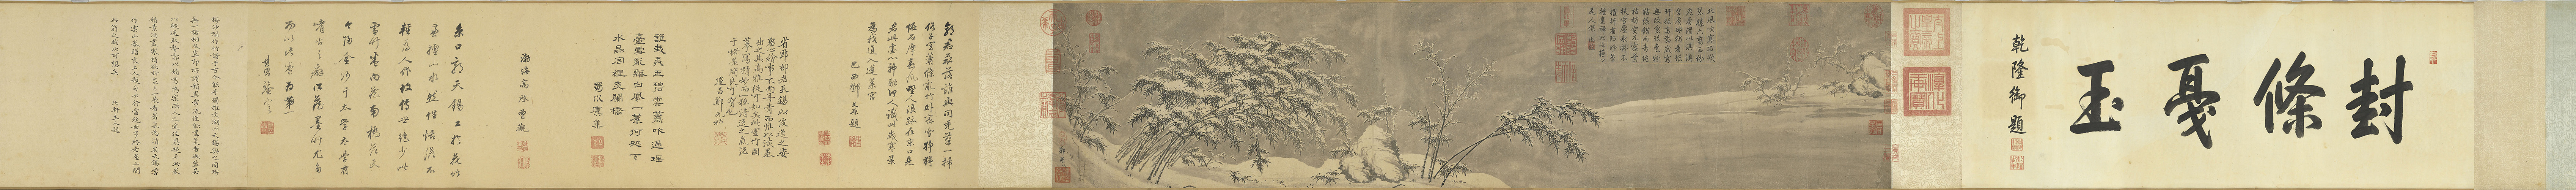 Guo Bi: Snowy Bamboo